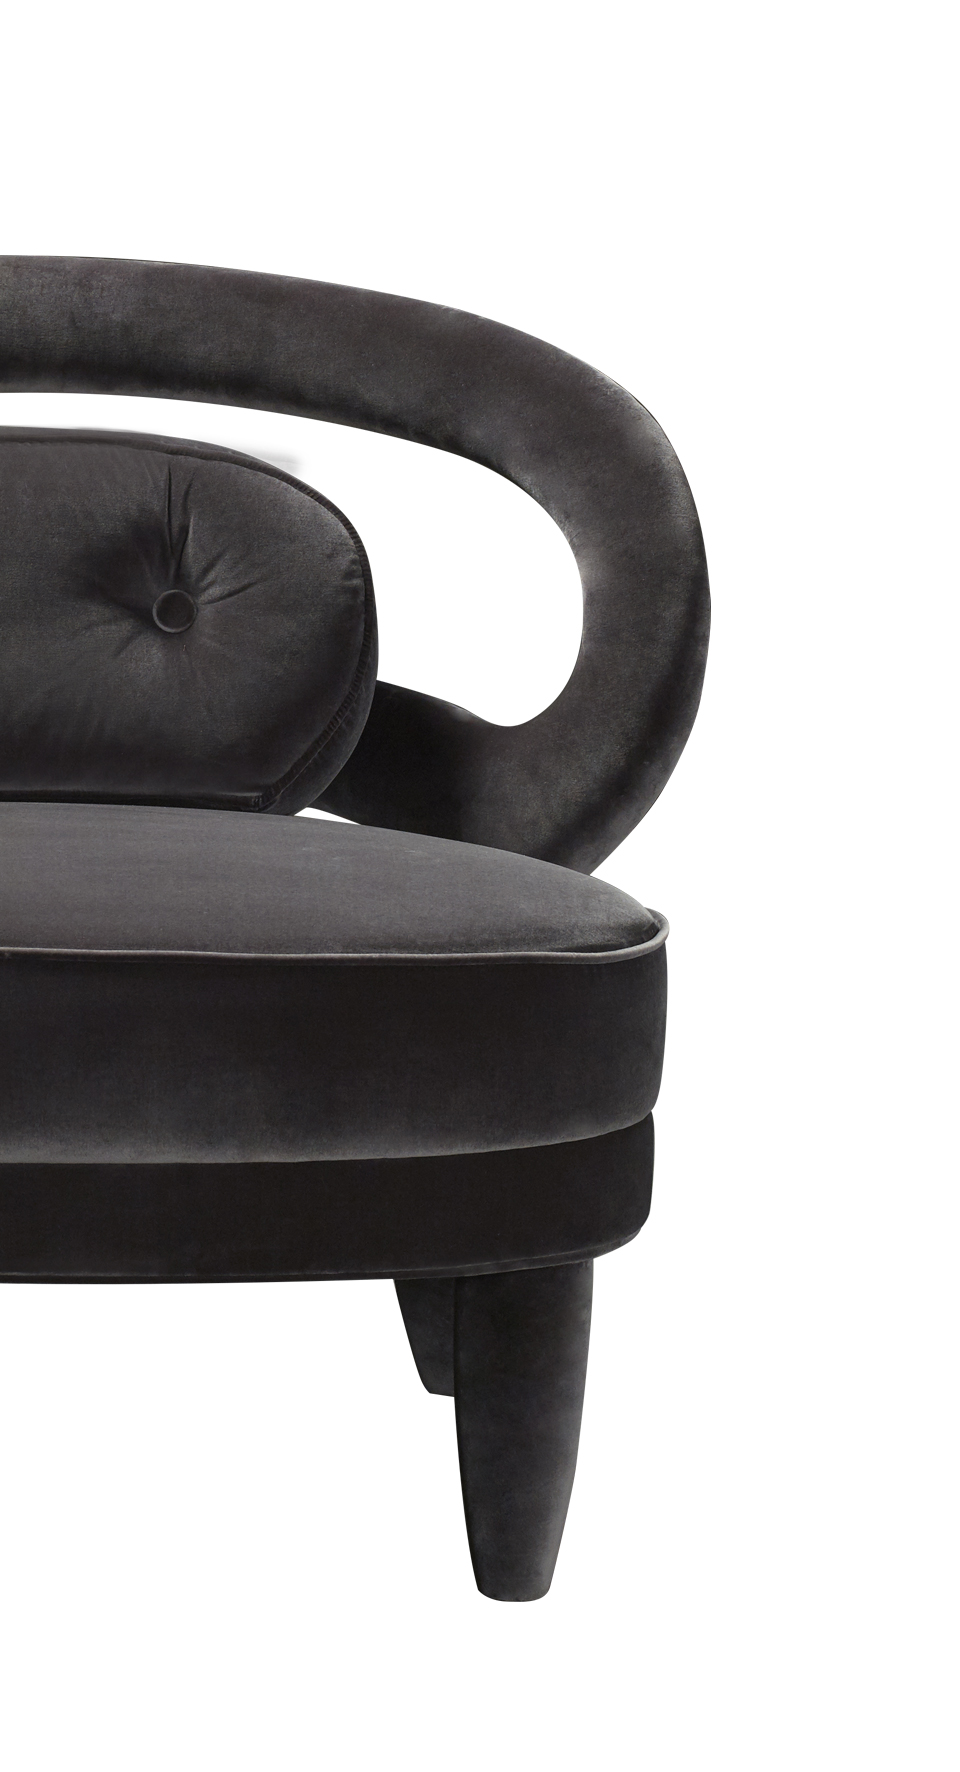 „Nina“ ist ein Sessel mit Stoff- oder Lederbezug und hoher oder niedriger Rückenlehne, aus dem Katalog von Promemoria | Promemoria